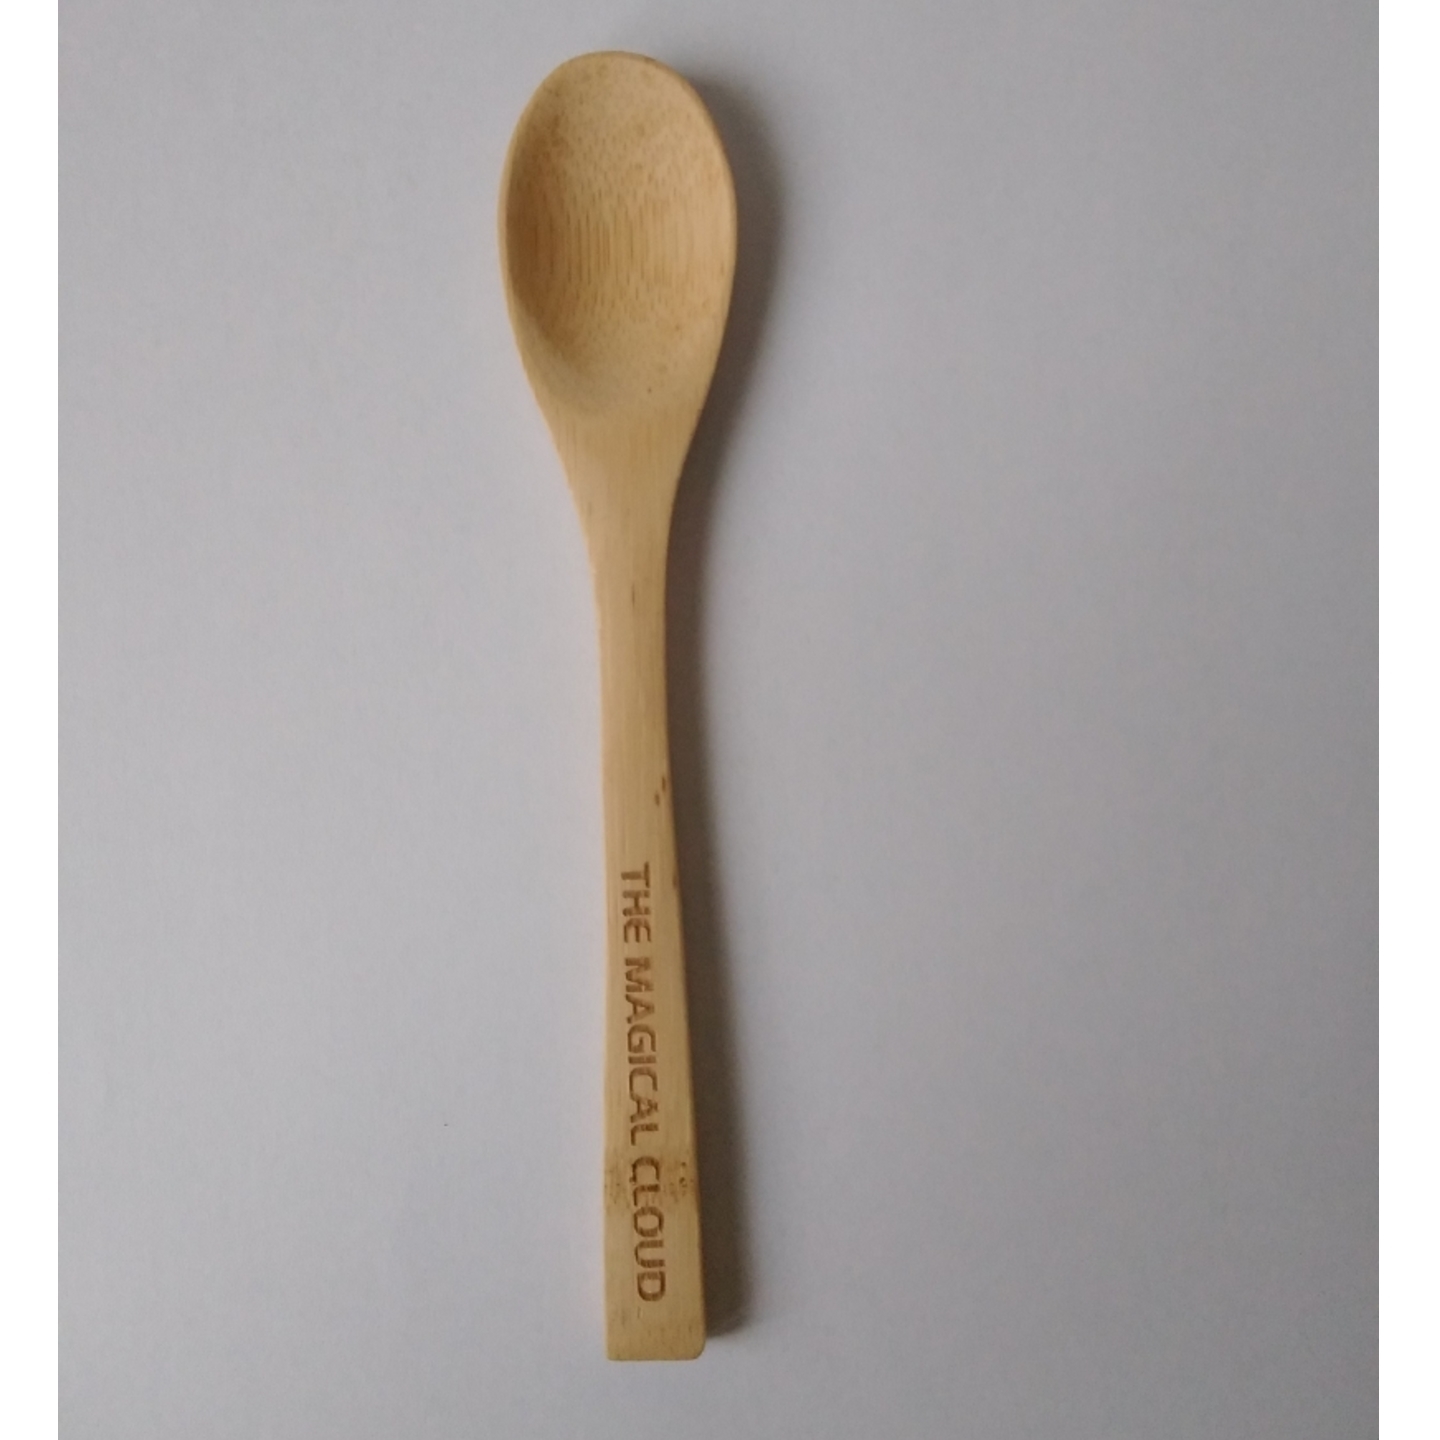 Bamboo spoon